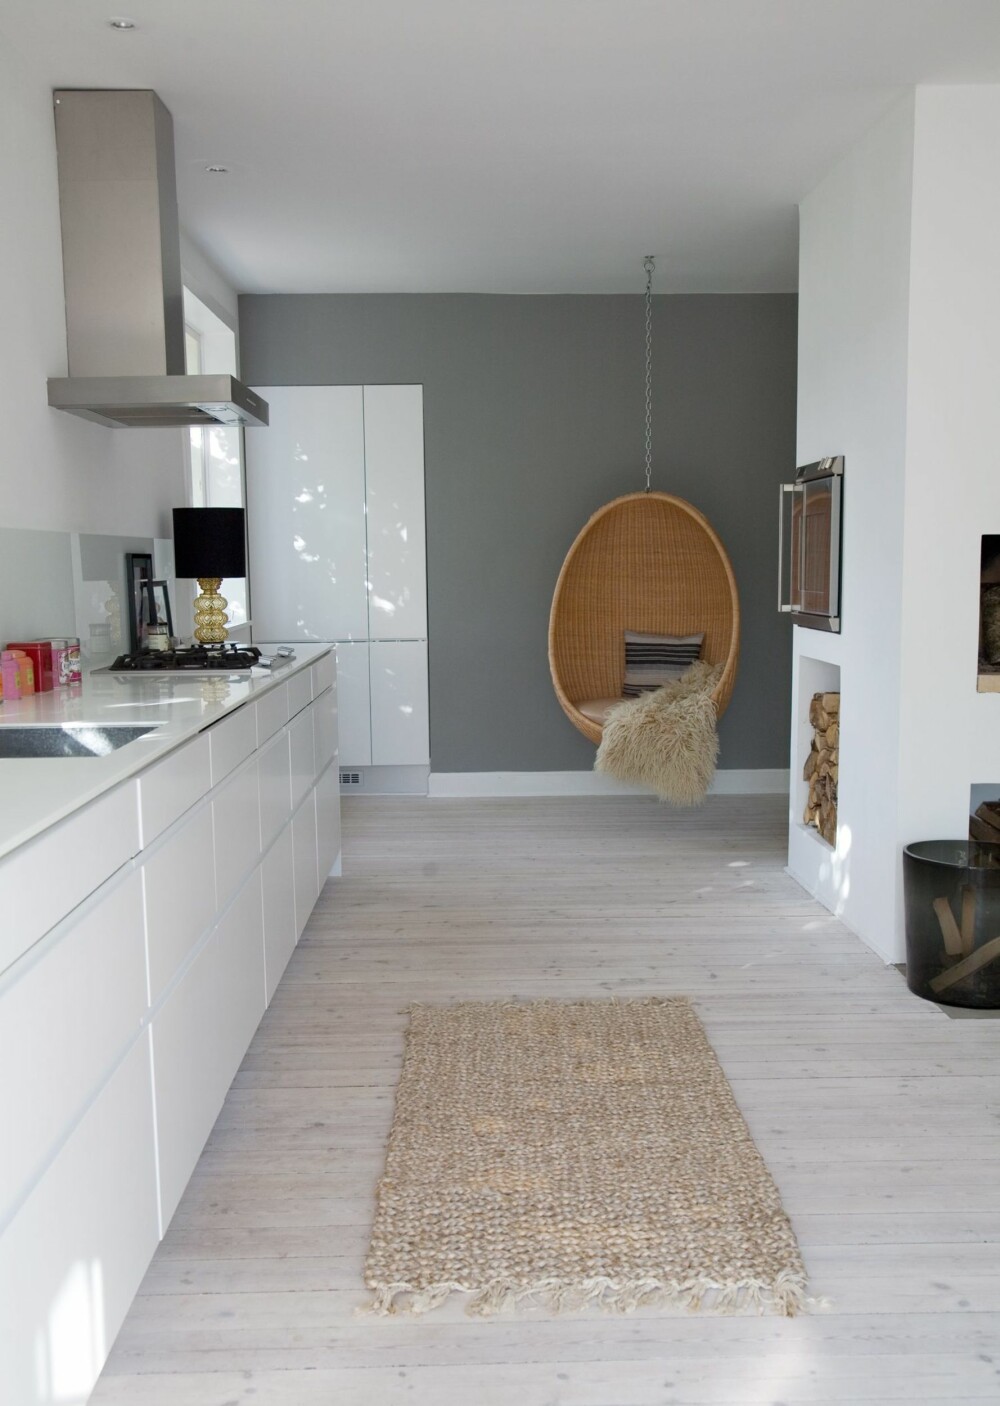 NORDISK: Gå for et hvitt kjøkken, grå vegg, matt gulv og innslag av tre om du ønsker denne stilen.